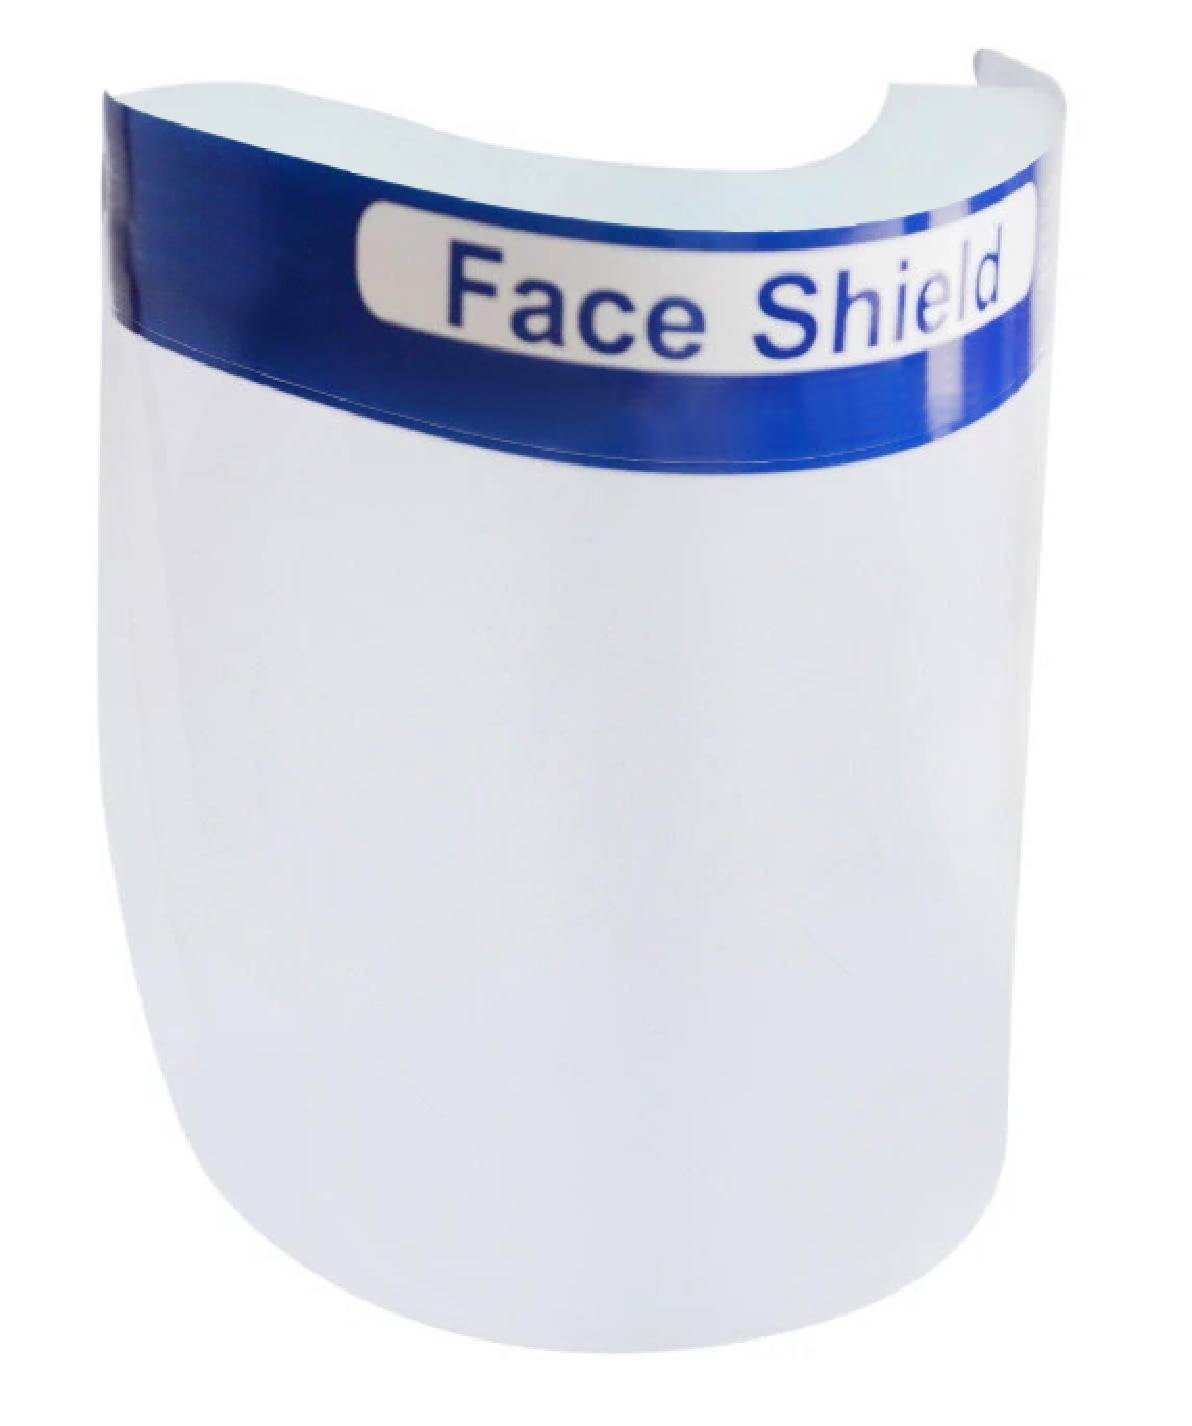 Face shield 